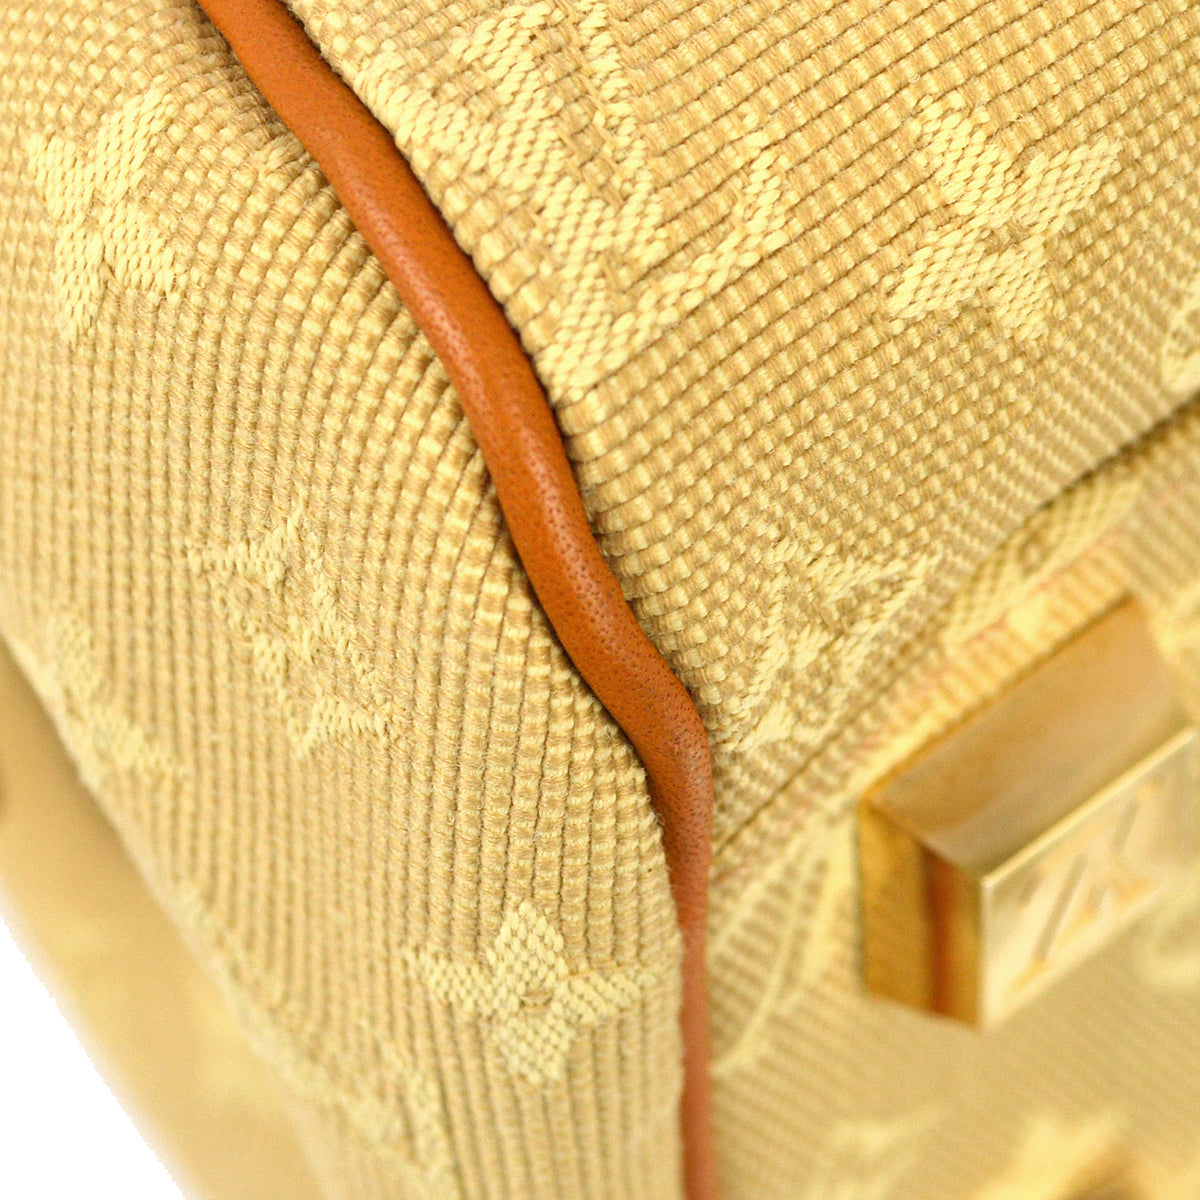 Louis Vuitton 2004 Beige Monogram Mini Josephine PM Handbag M92416